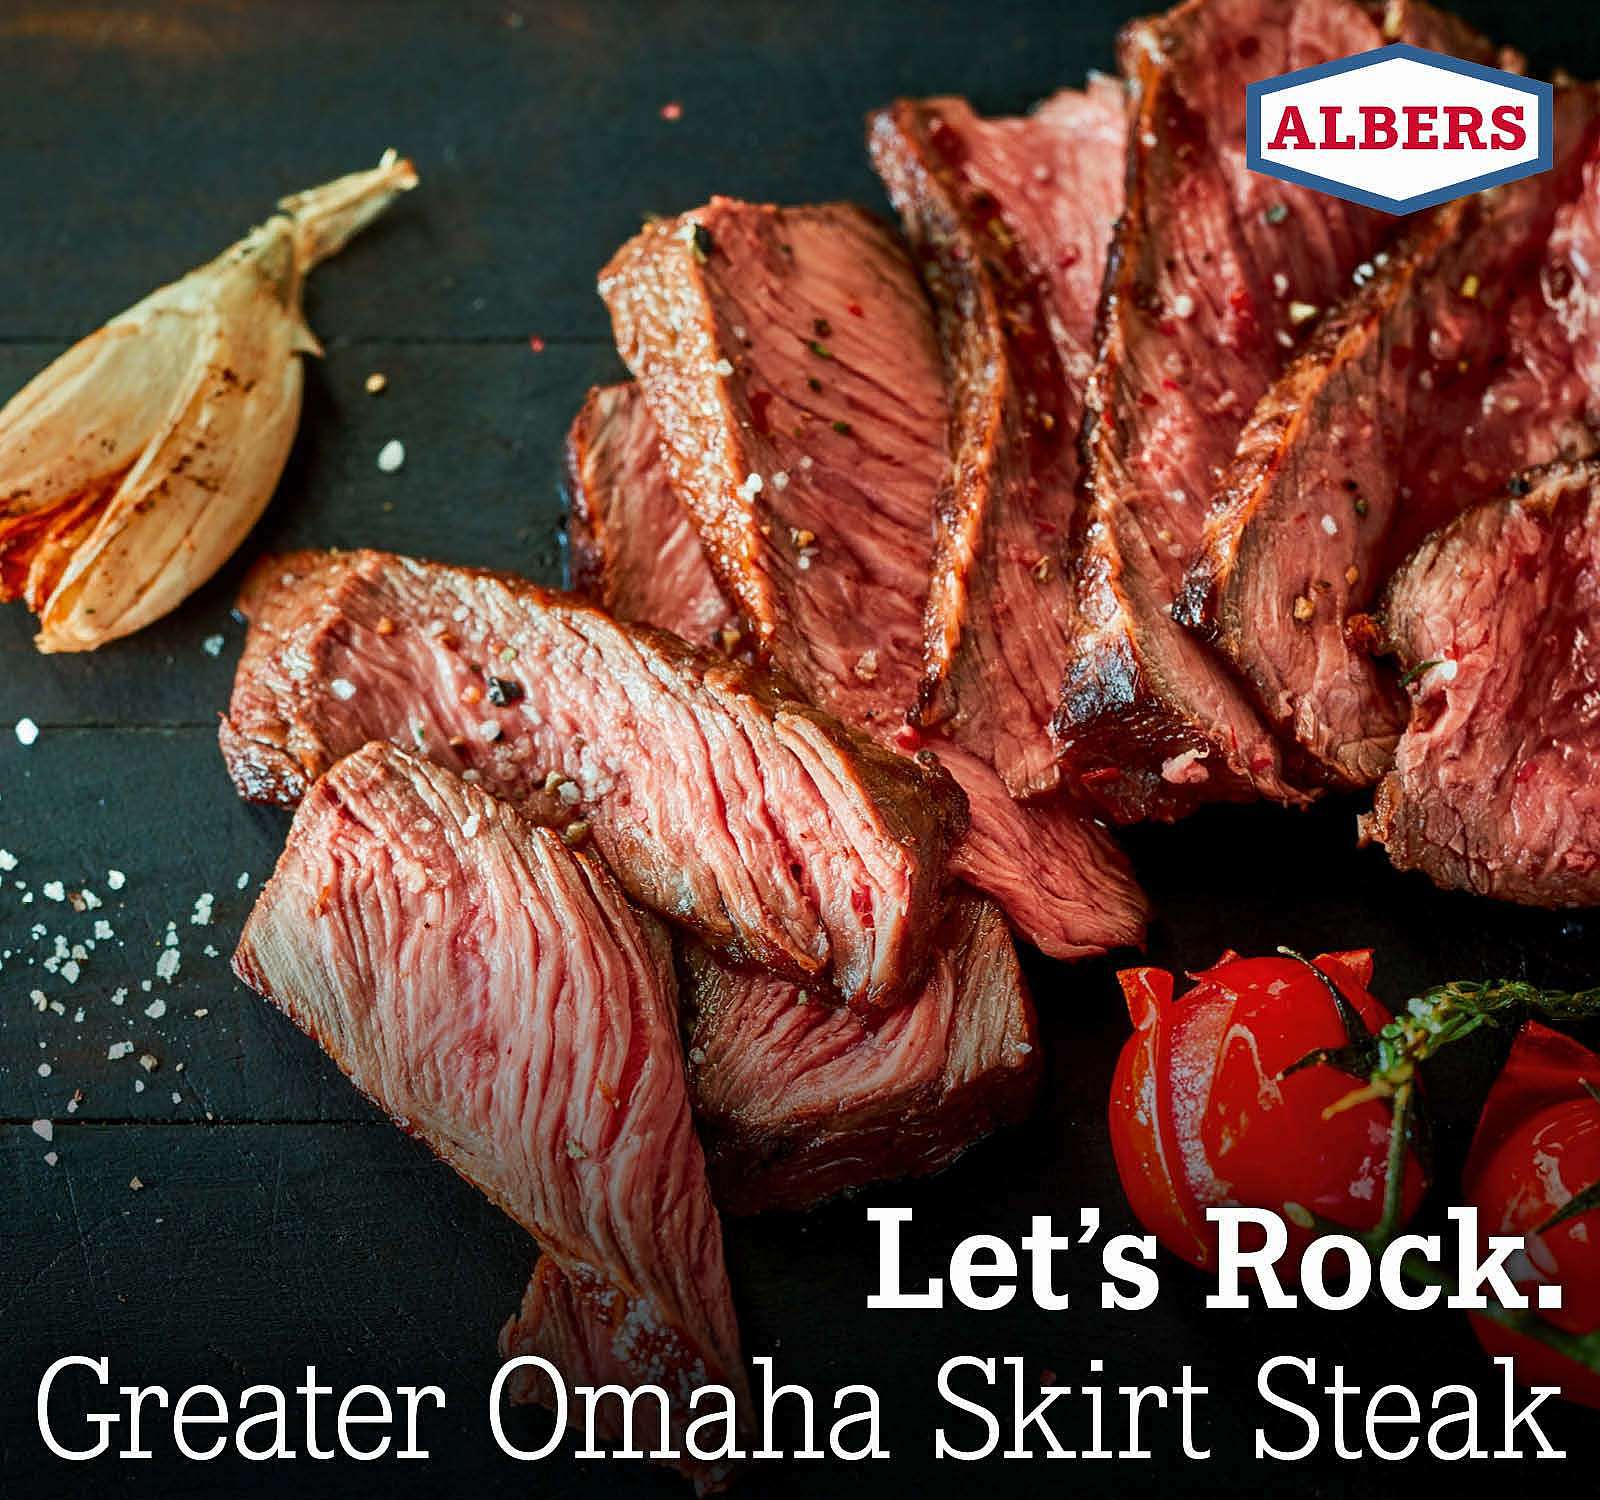 Let’s Rock. Great Omaha Skirt Steak